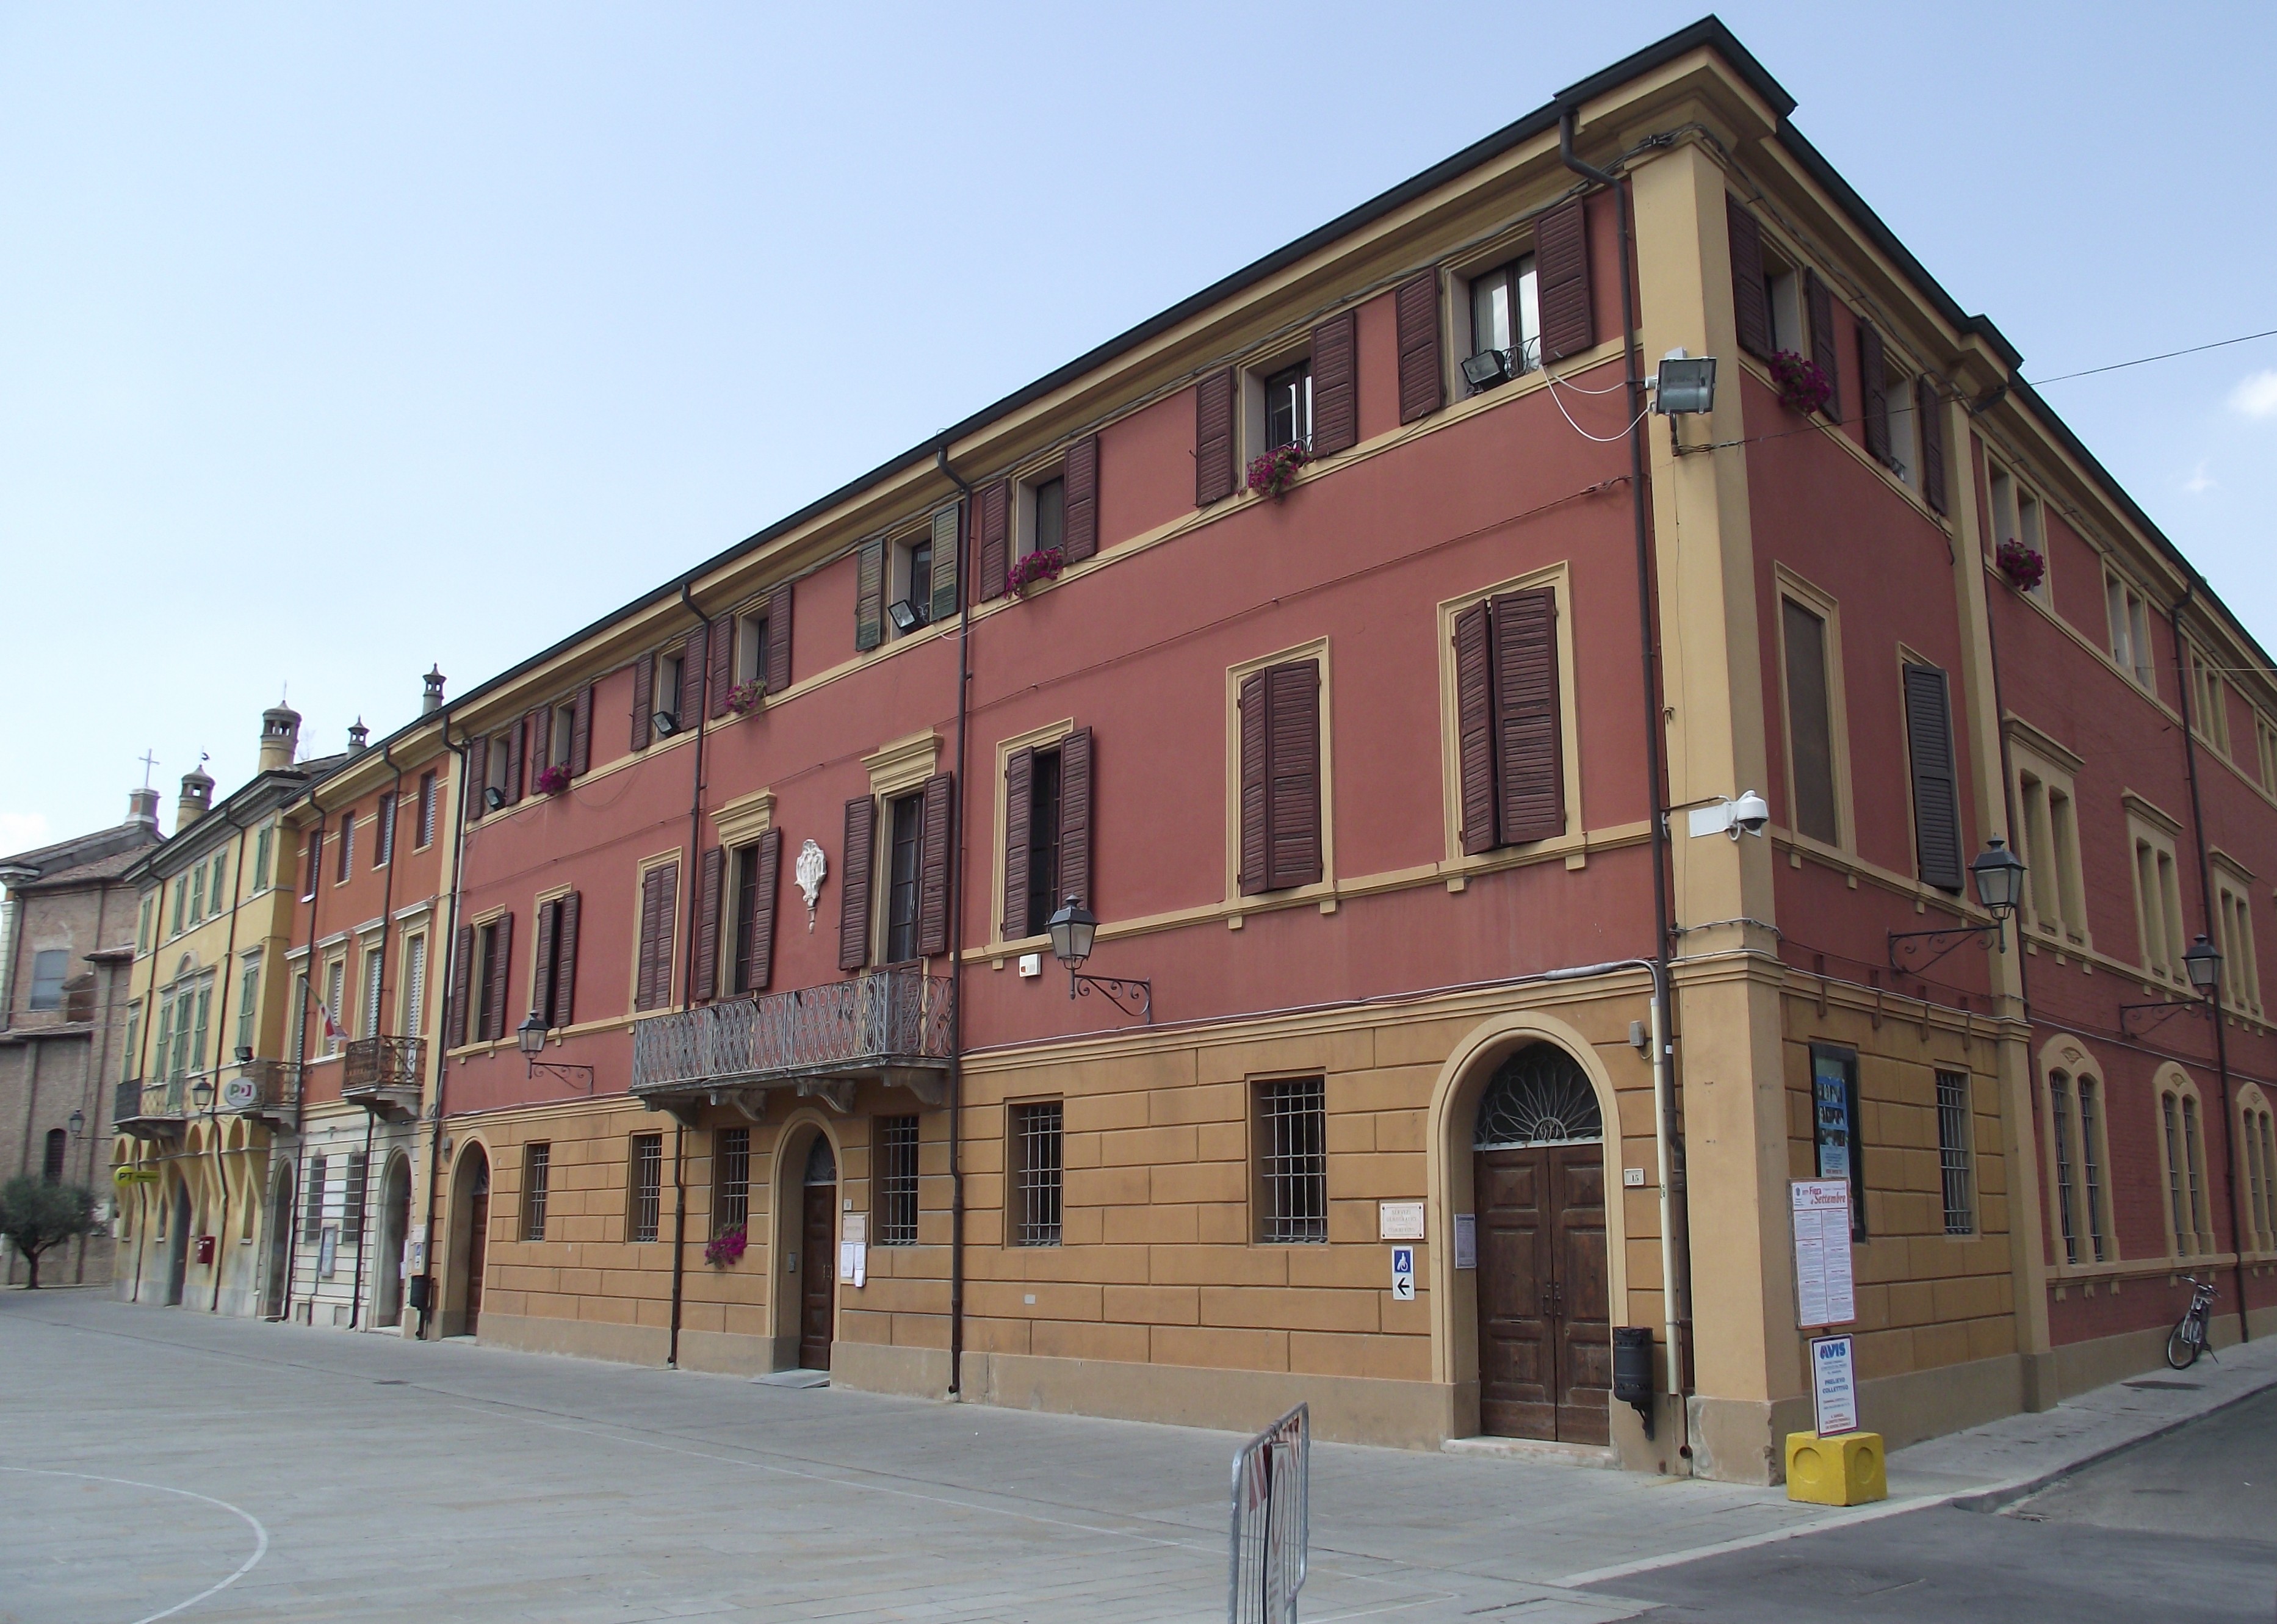 foto: https://upload.wikimedia.org/wikipedia/commons/4/43/Palazzo_Comunale_di_San_Felice_sul_Panaro_%28MO%29.JPG